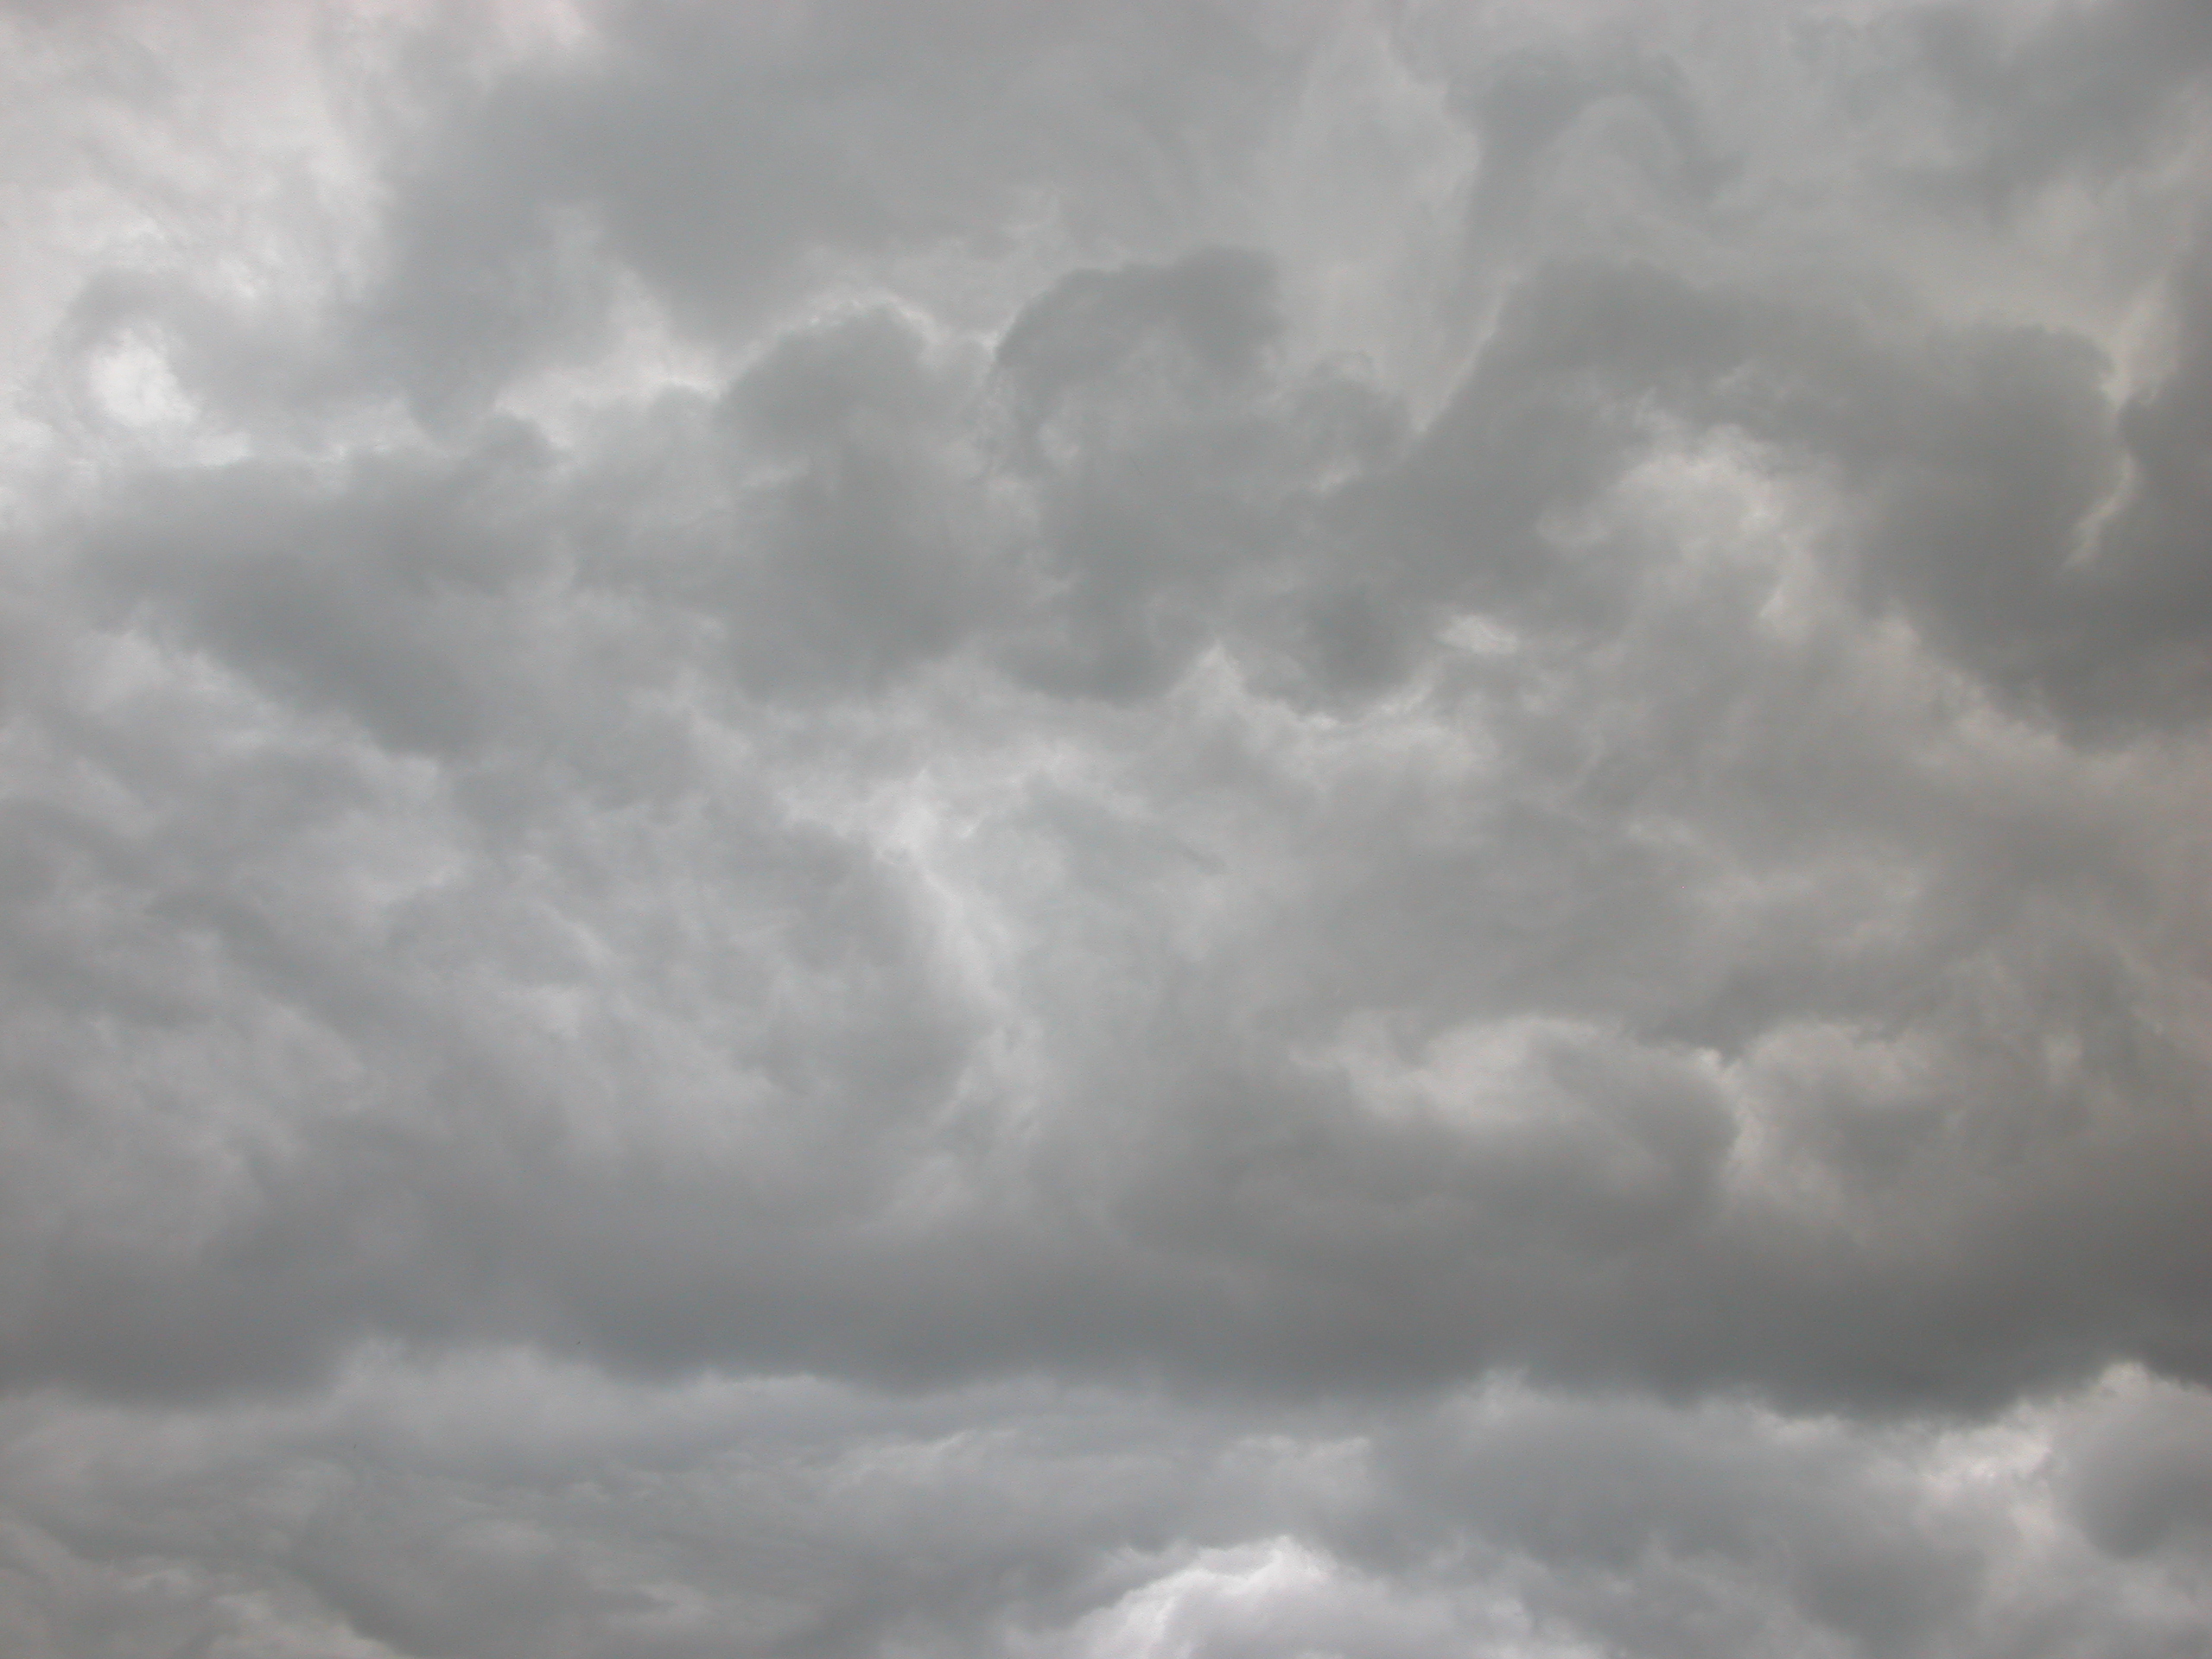 Image*After : images : nature elements clouds storm rainstorm ...